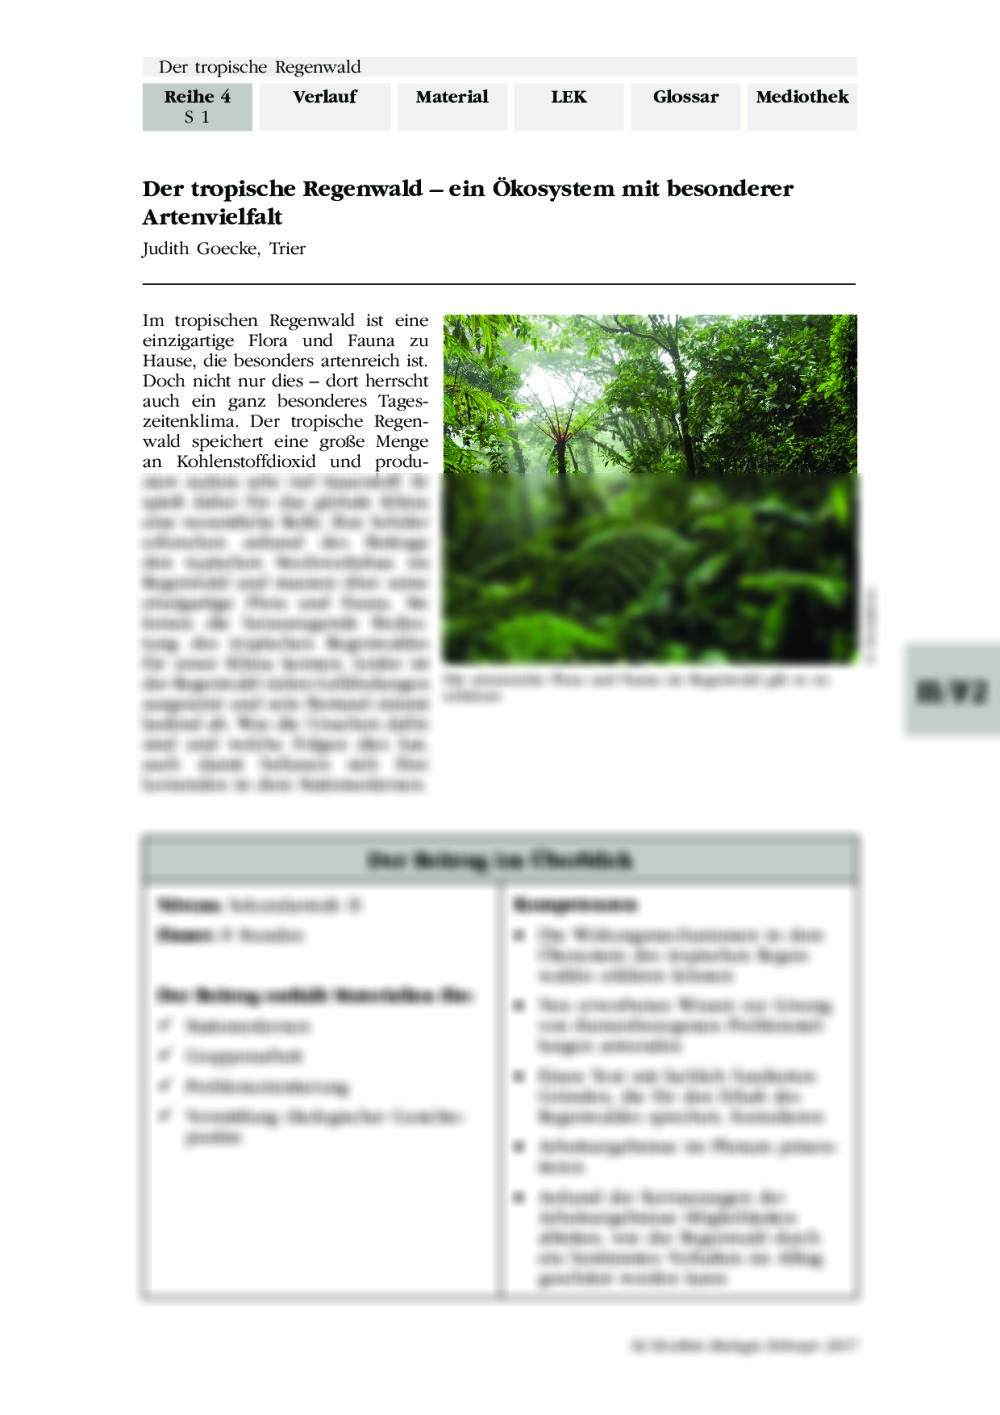 Der tropische Regenwald – ein Ökosystem mit besonderer Artenvielfalt - Seite 1